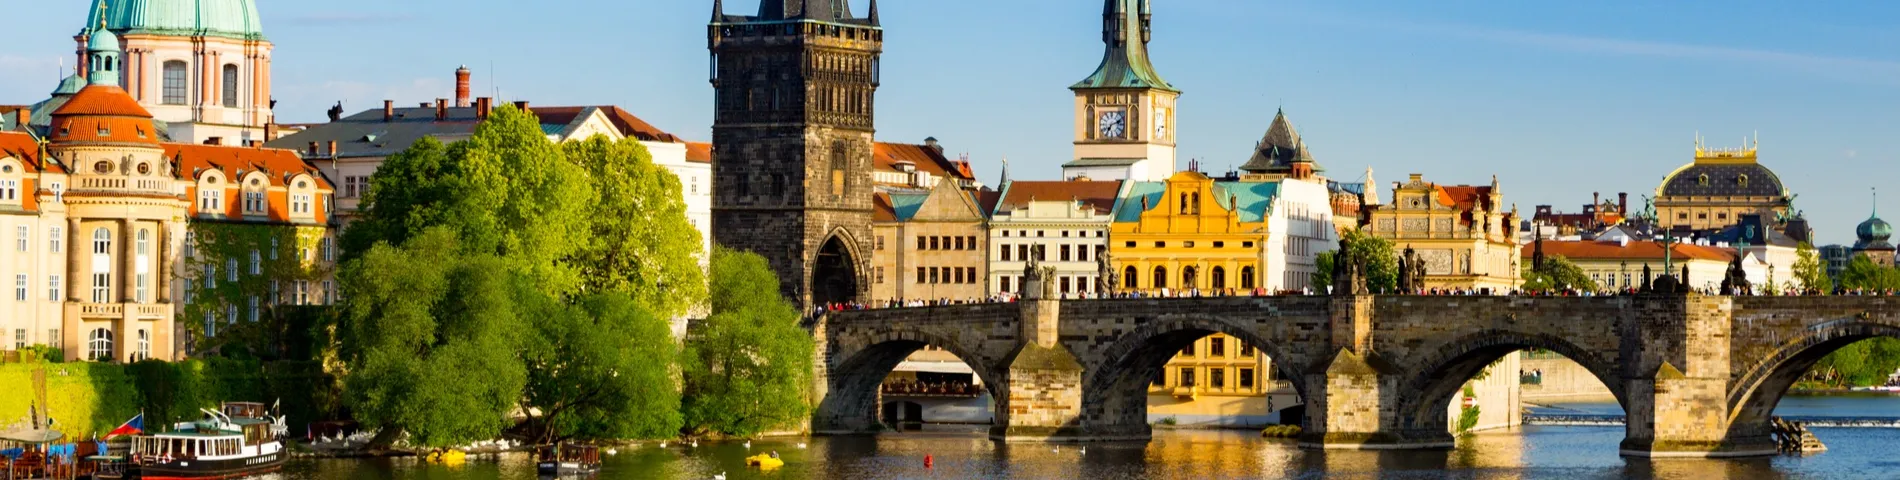 Praha - 